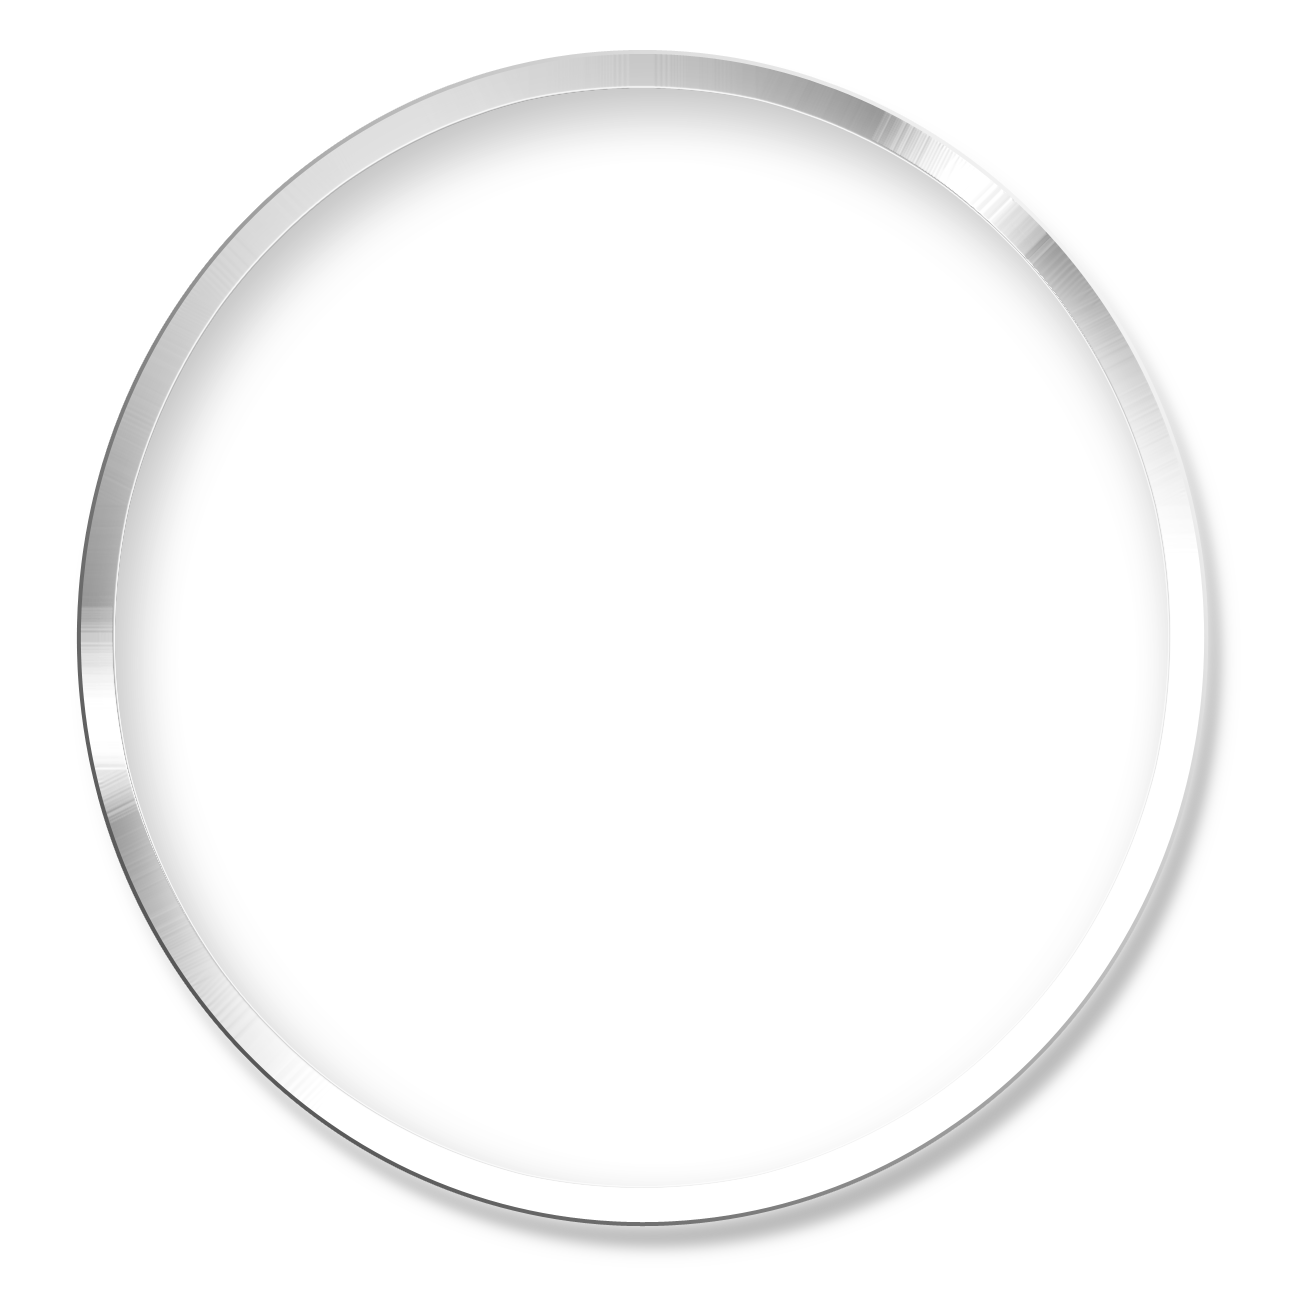 Сделать прозрачная картинка png. Белый круг на прозрачном фоне. Белая круглая рамка для фотошопа. Круг без фона. Прозрачный круг.